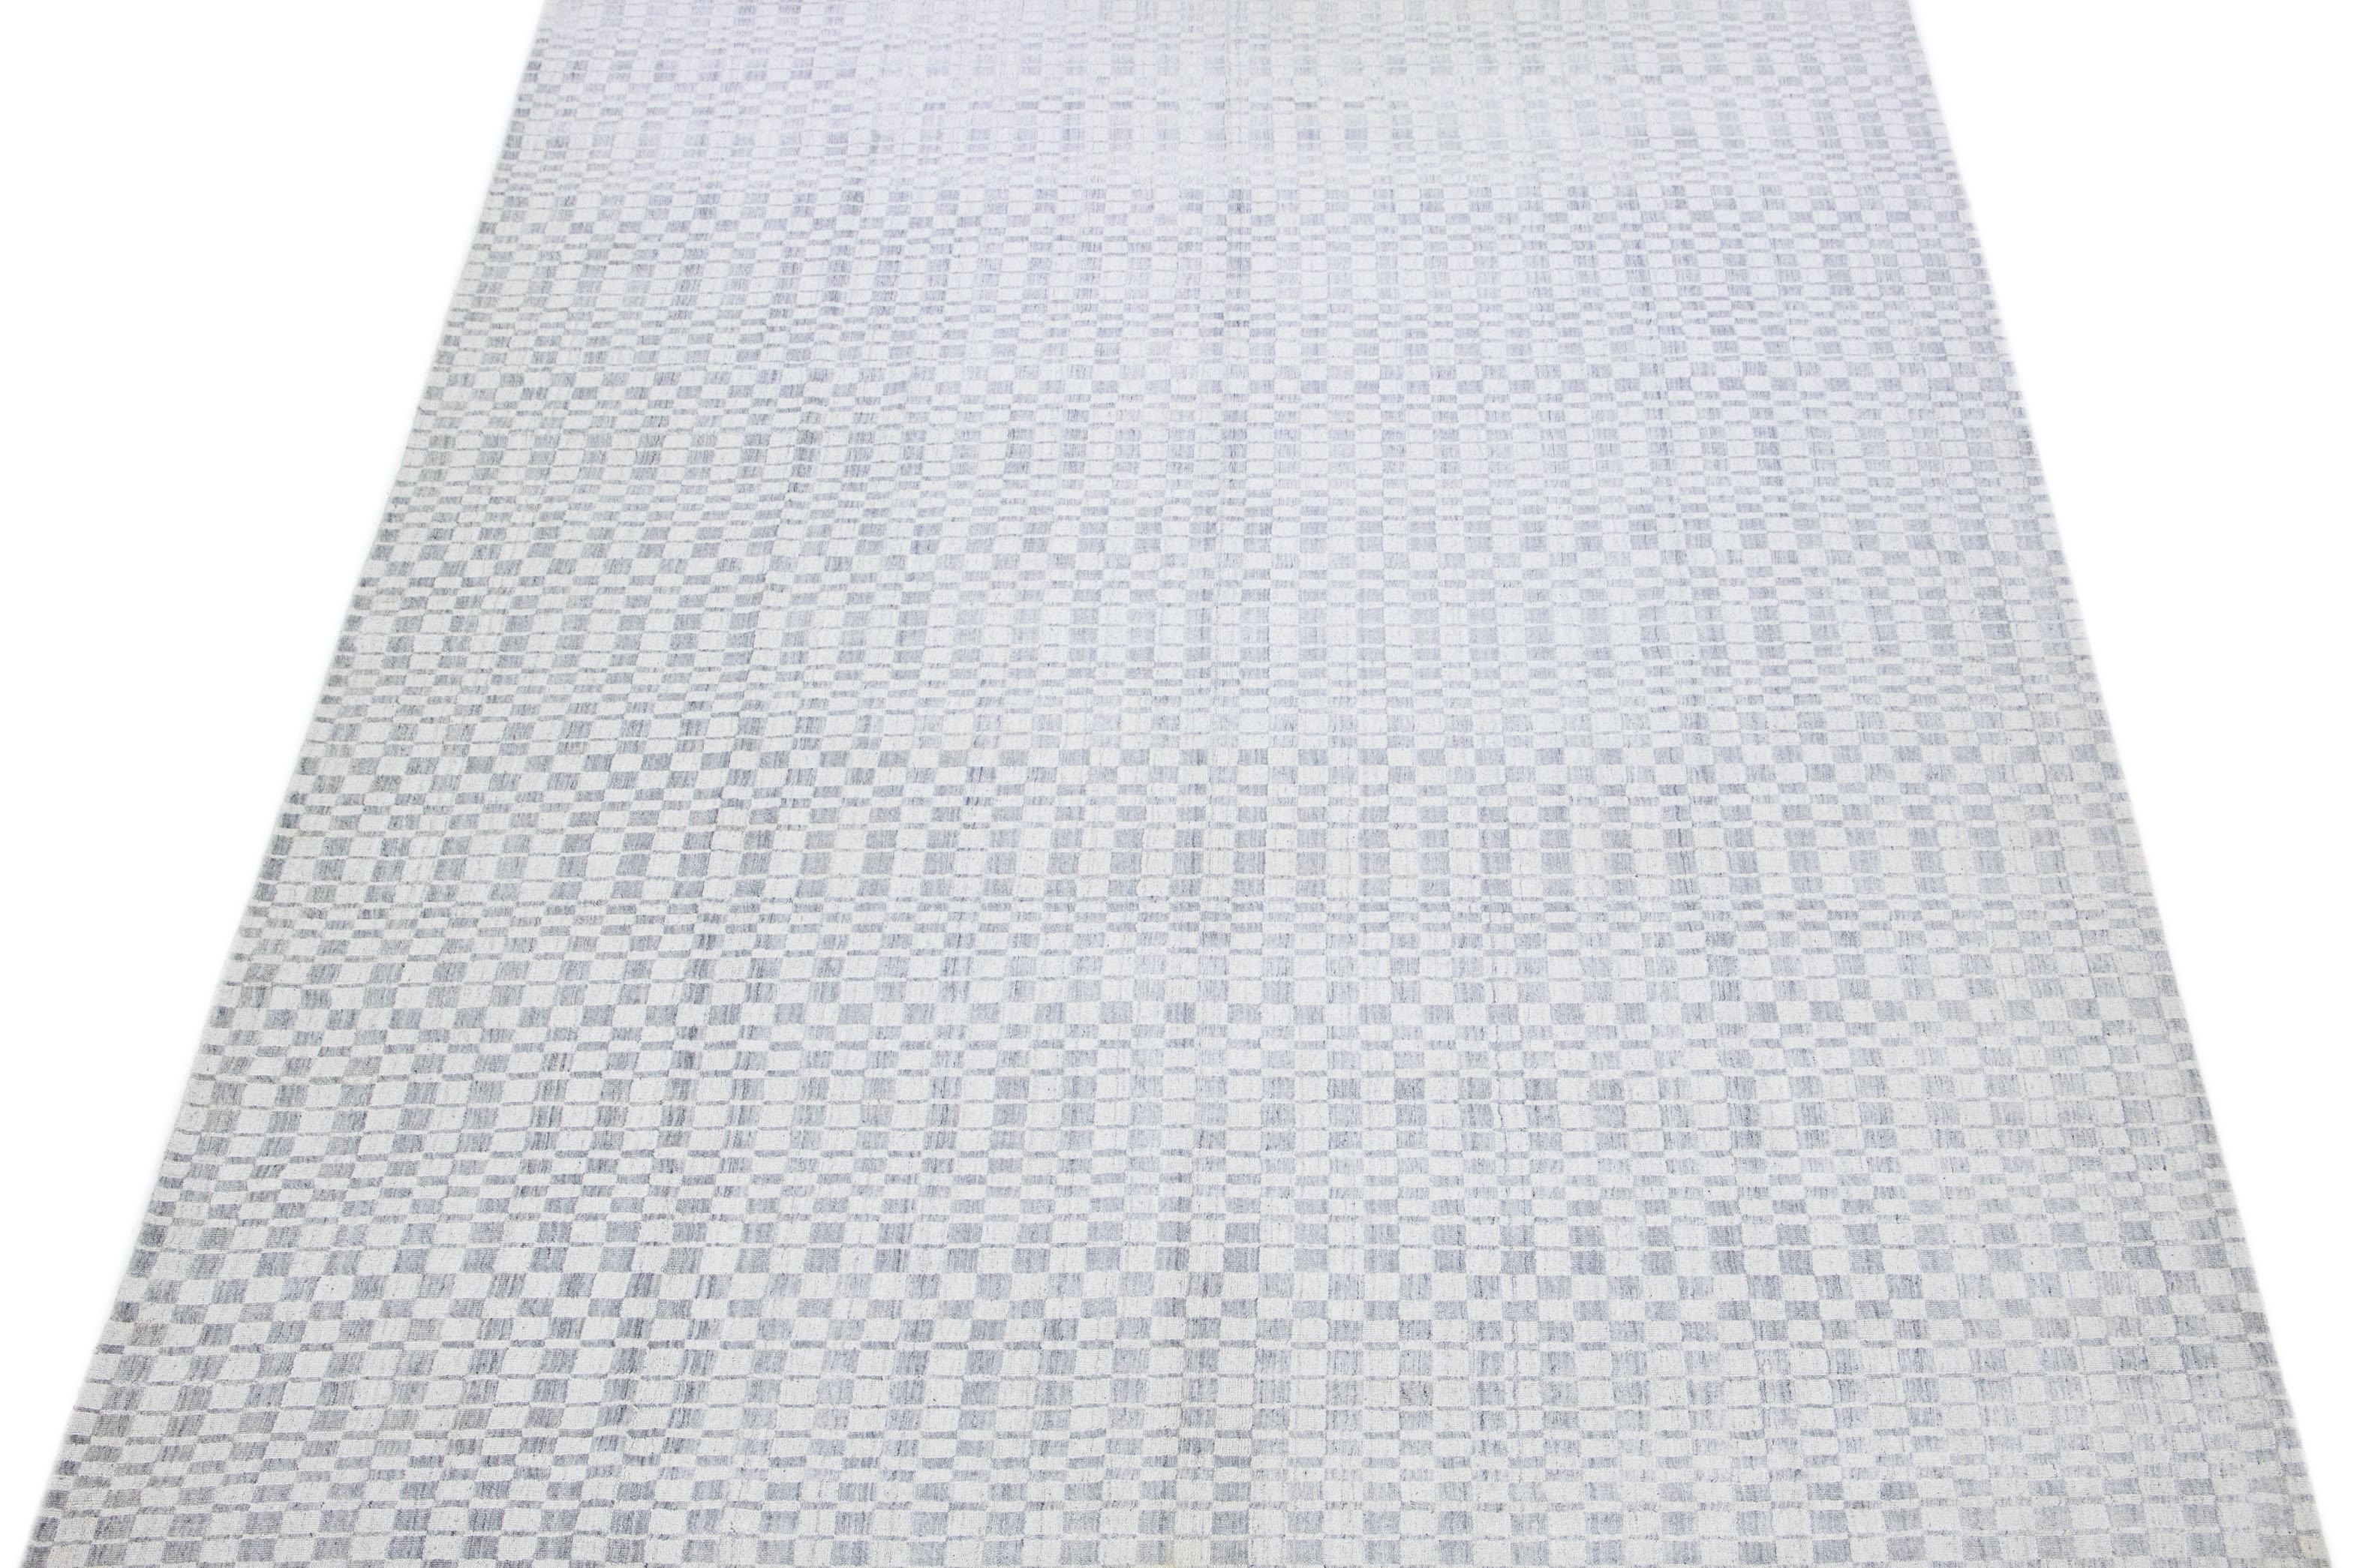 Schöner moderner Woll- und Seidenteppich mit grauem Feld und einem wunderschönen nahtlosen geometrischen Muster.

Dieser Teppich misst 9'11